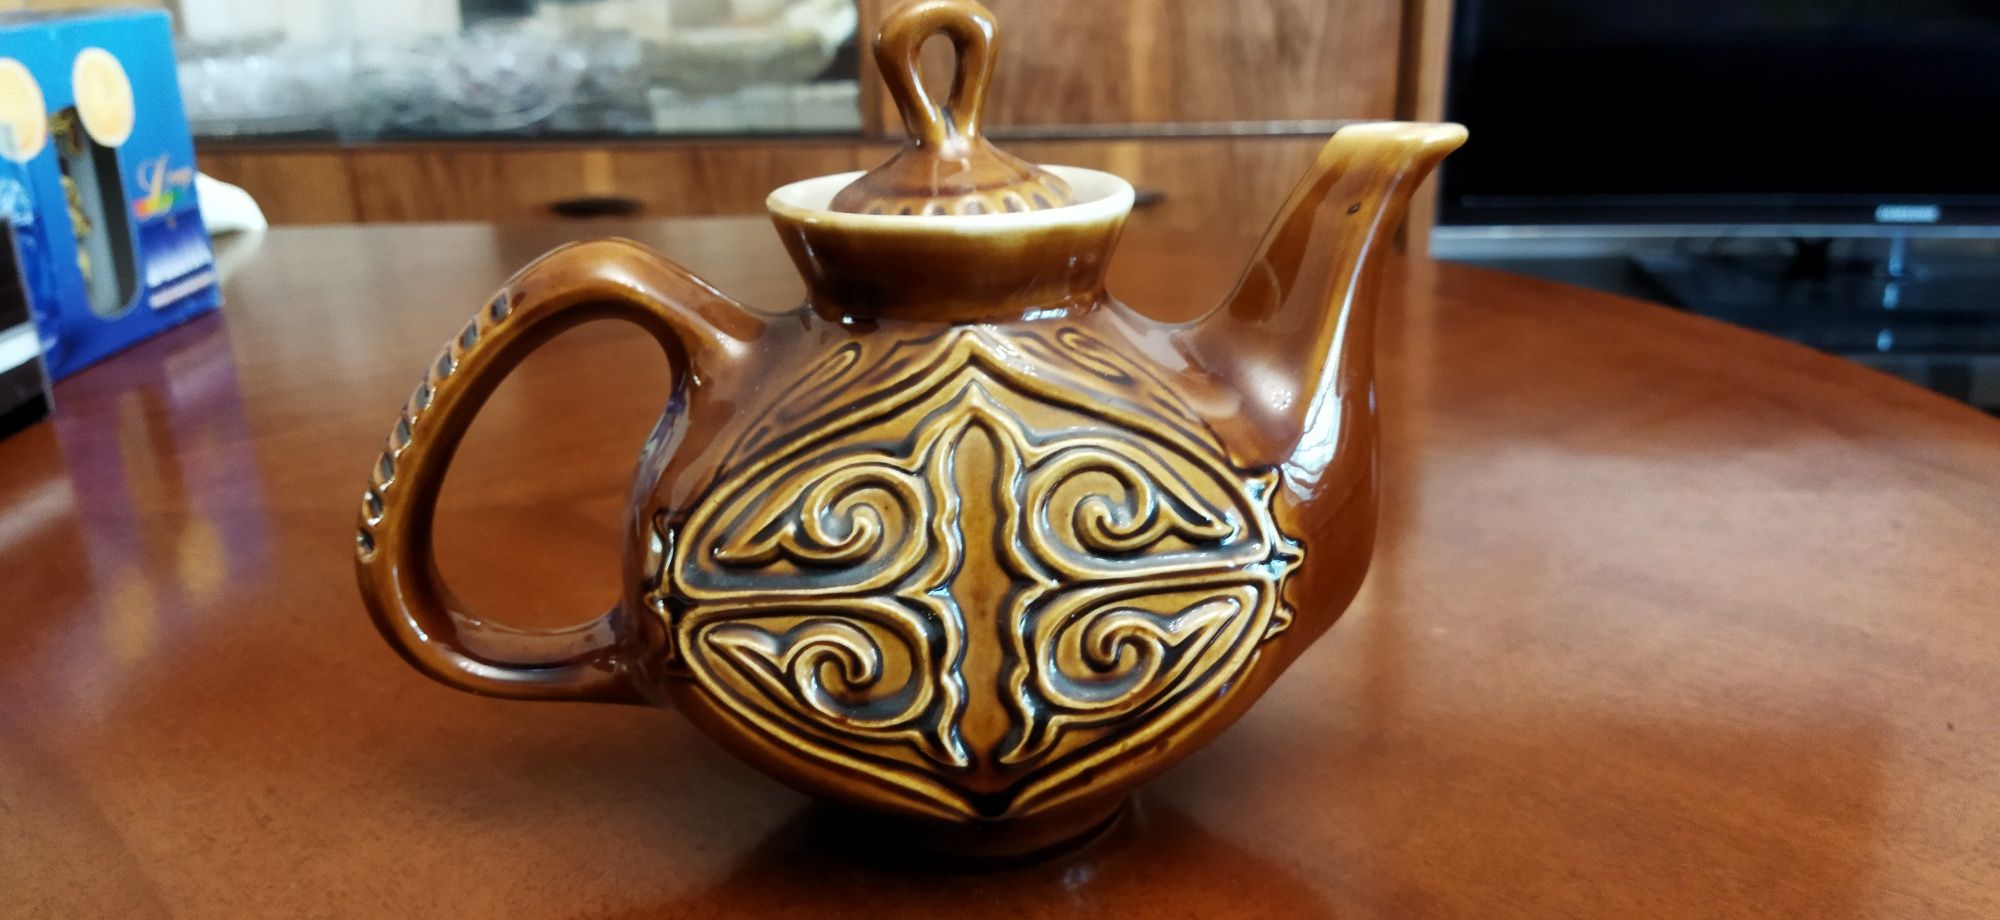 Продаю сувенирный чайник из керамики посвящённый олимпиаде 1980г